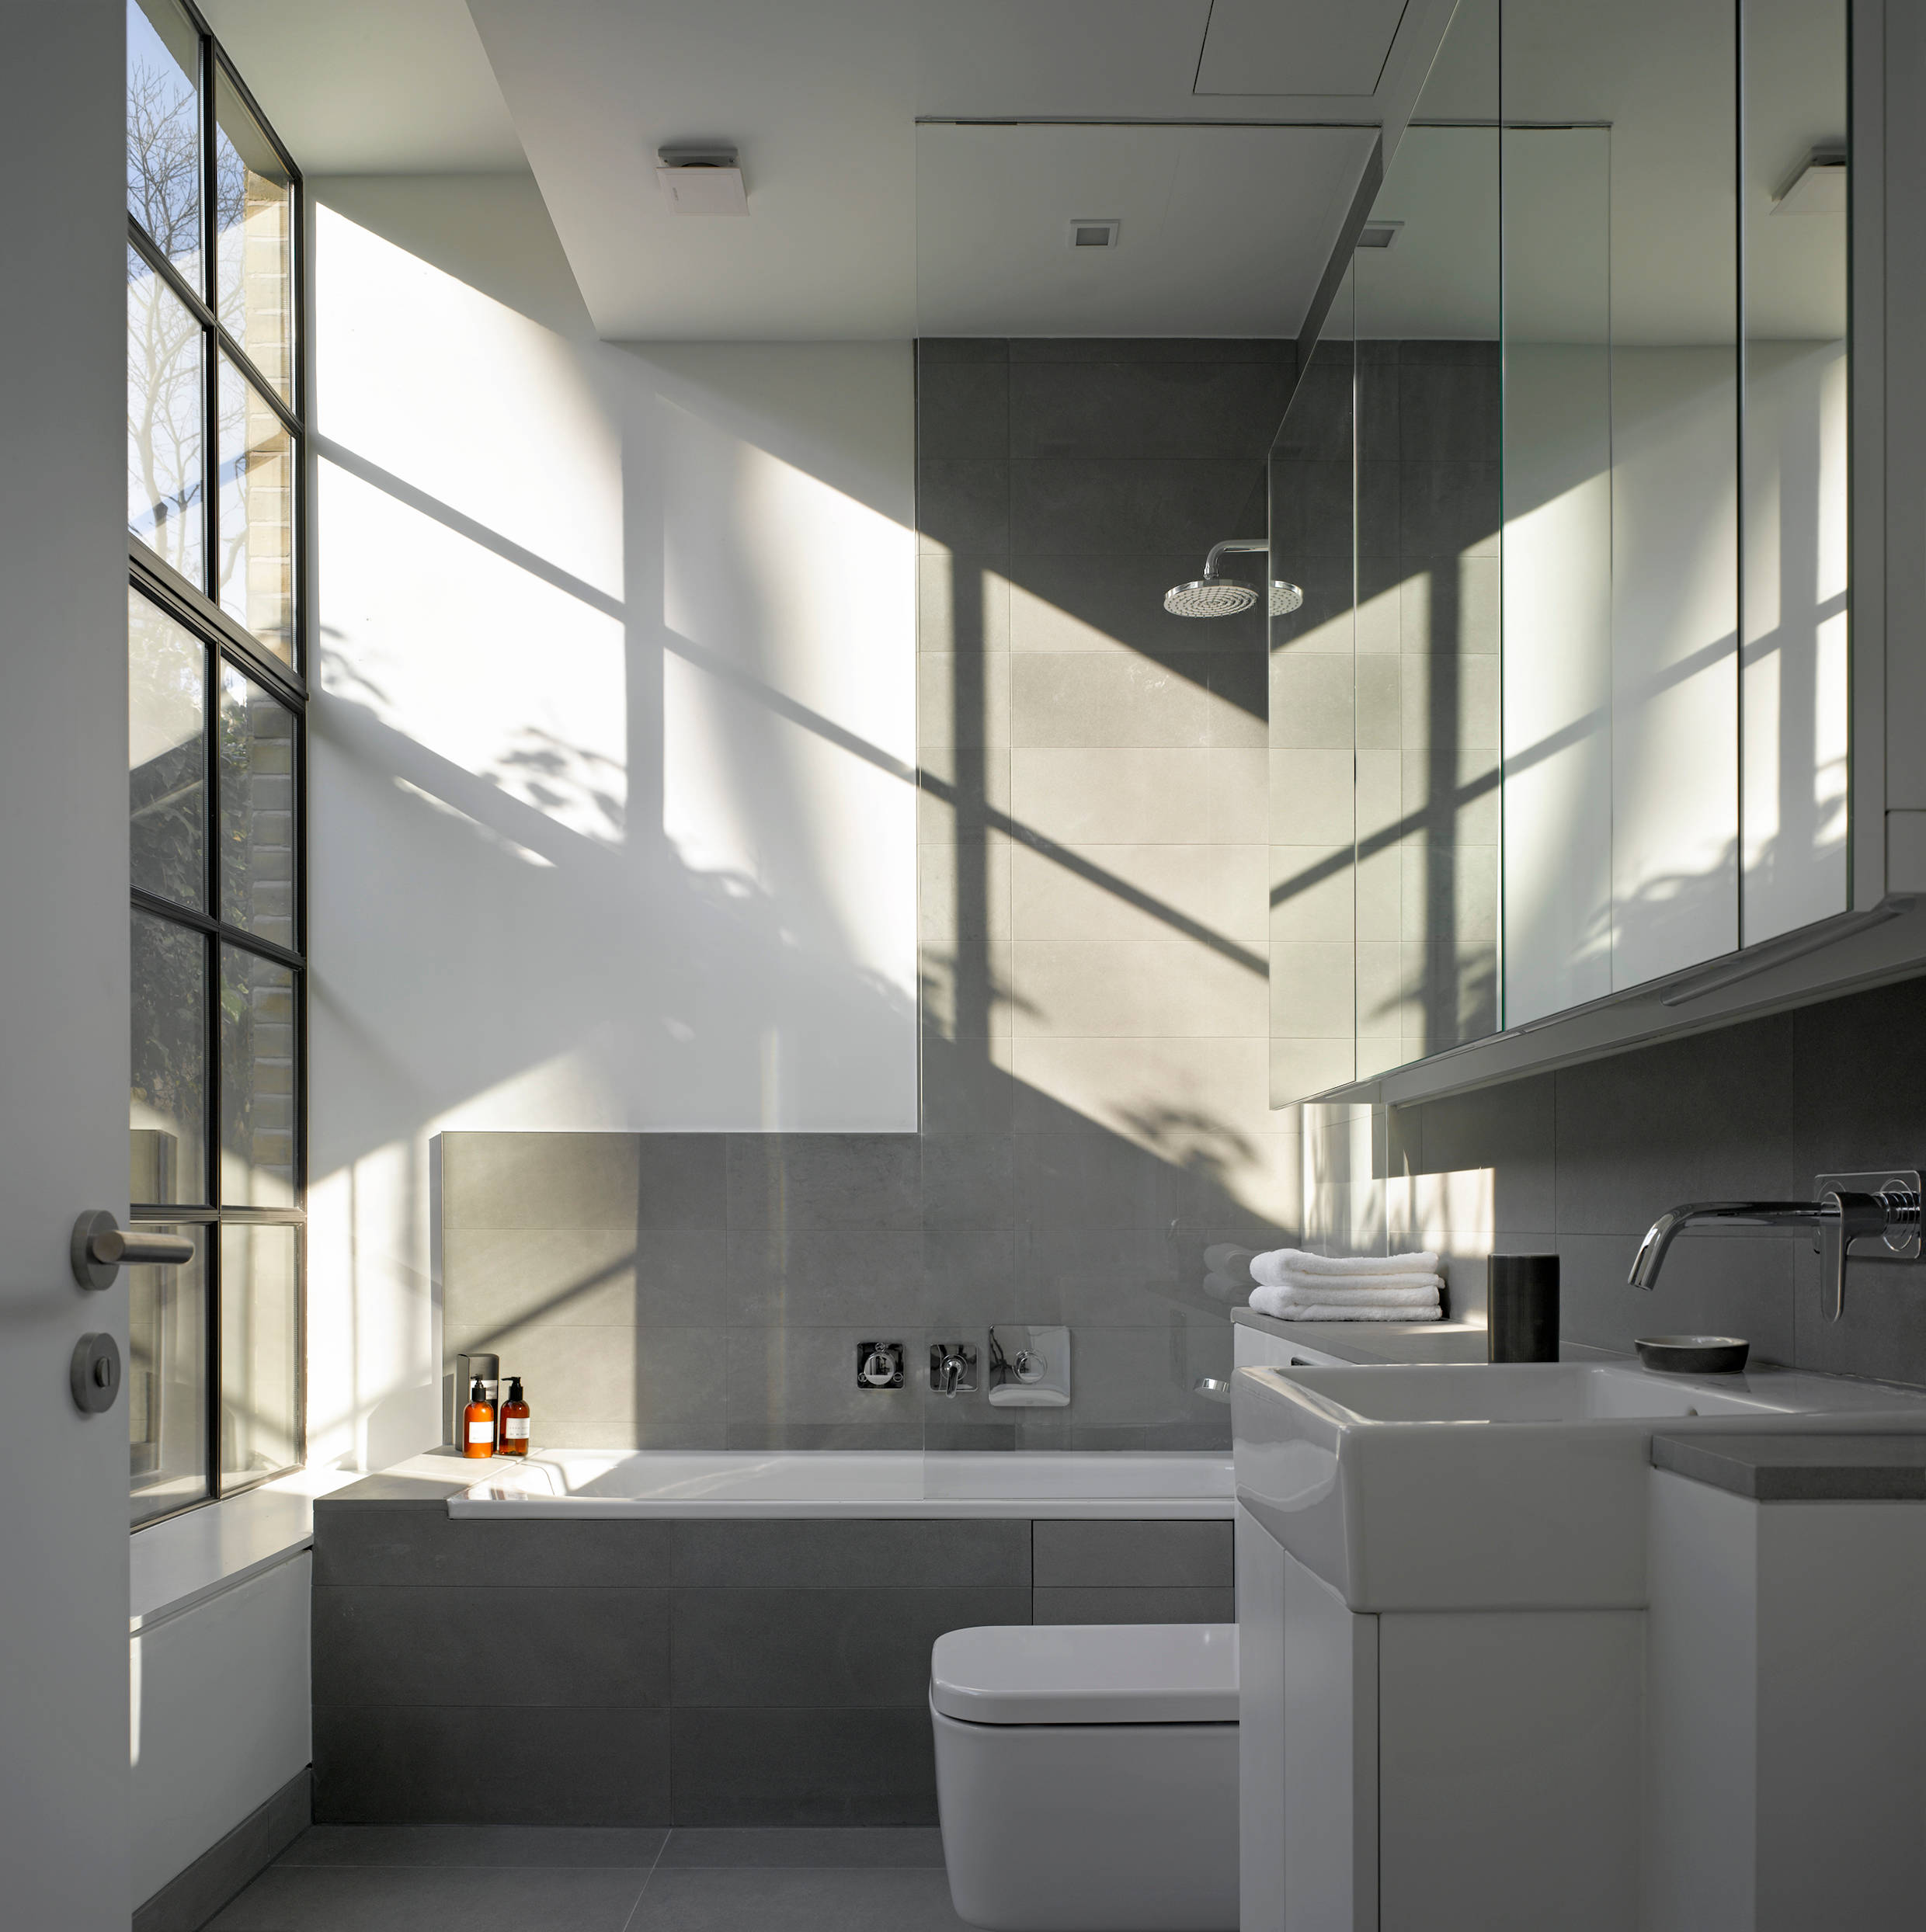 Ein modernes Bad mit grauen Fliesenwänden und weißen Armaturen auf